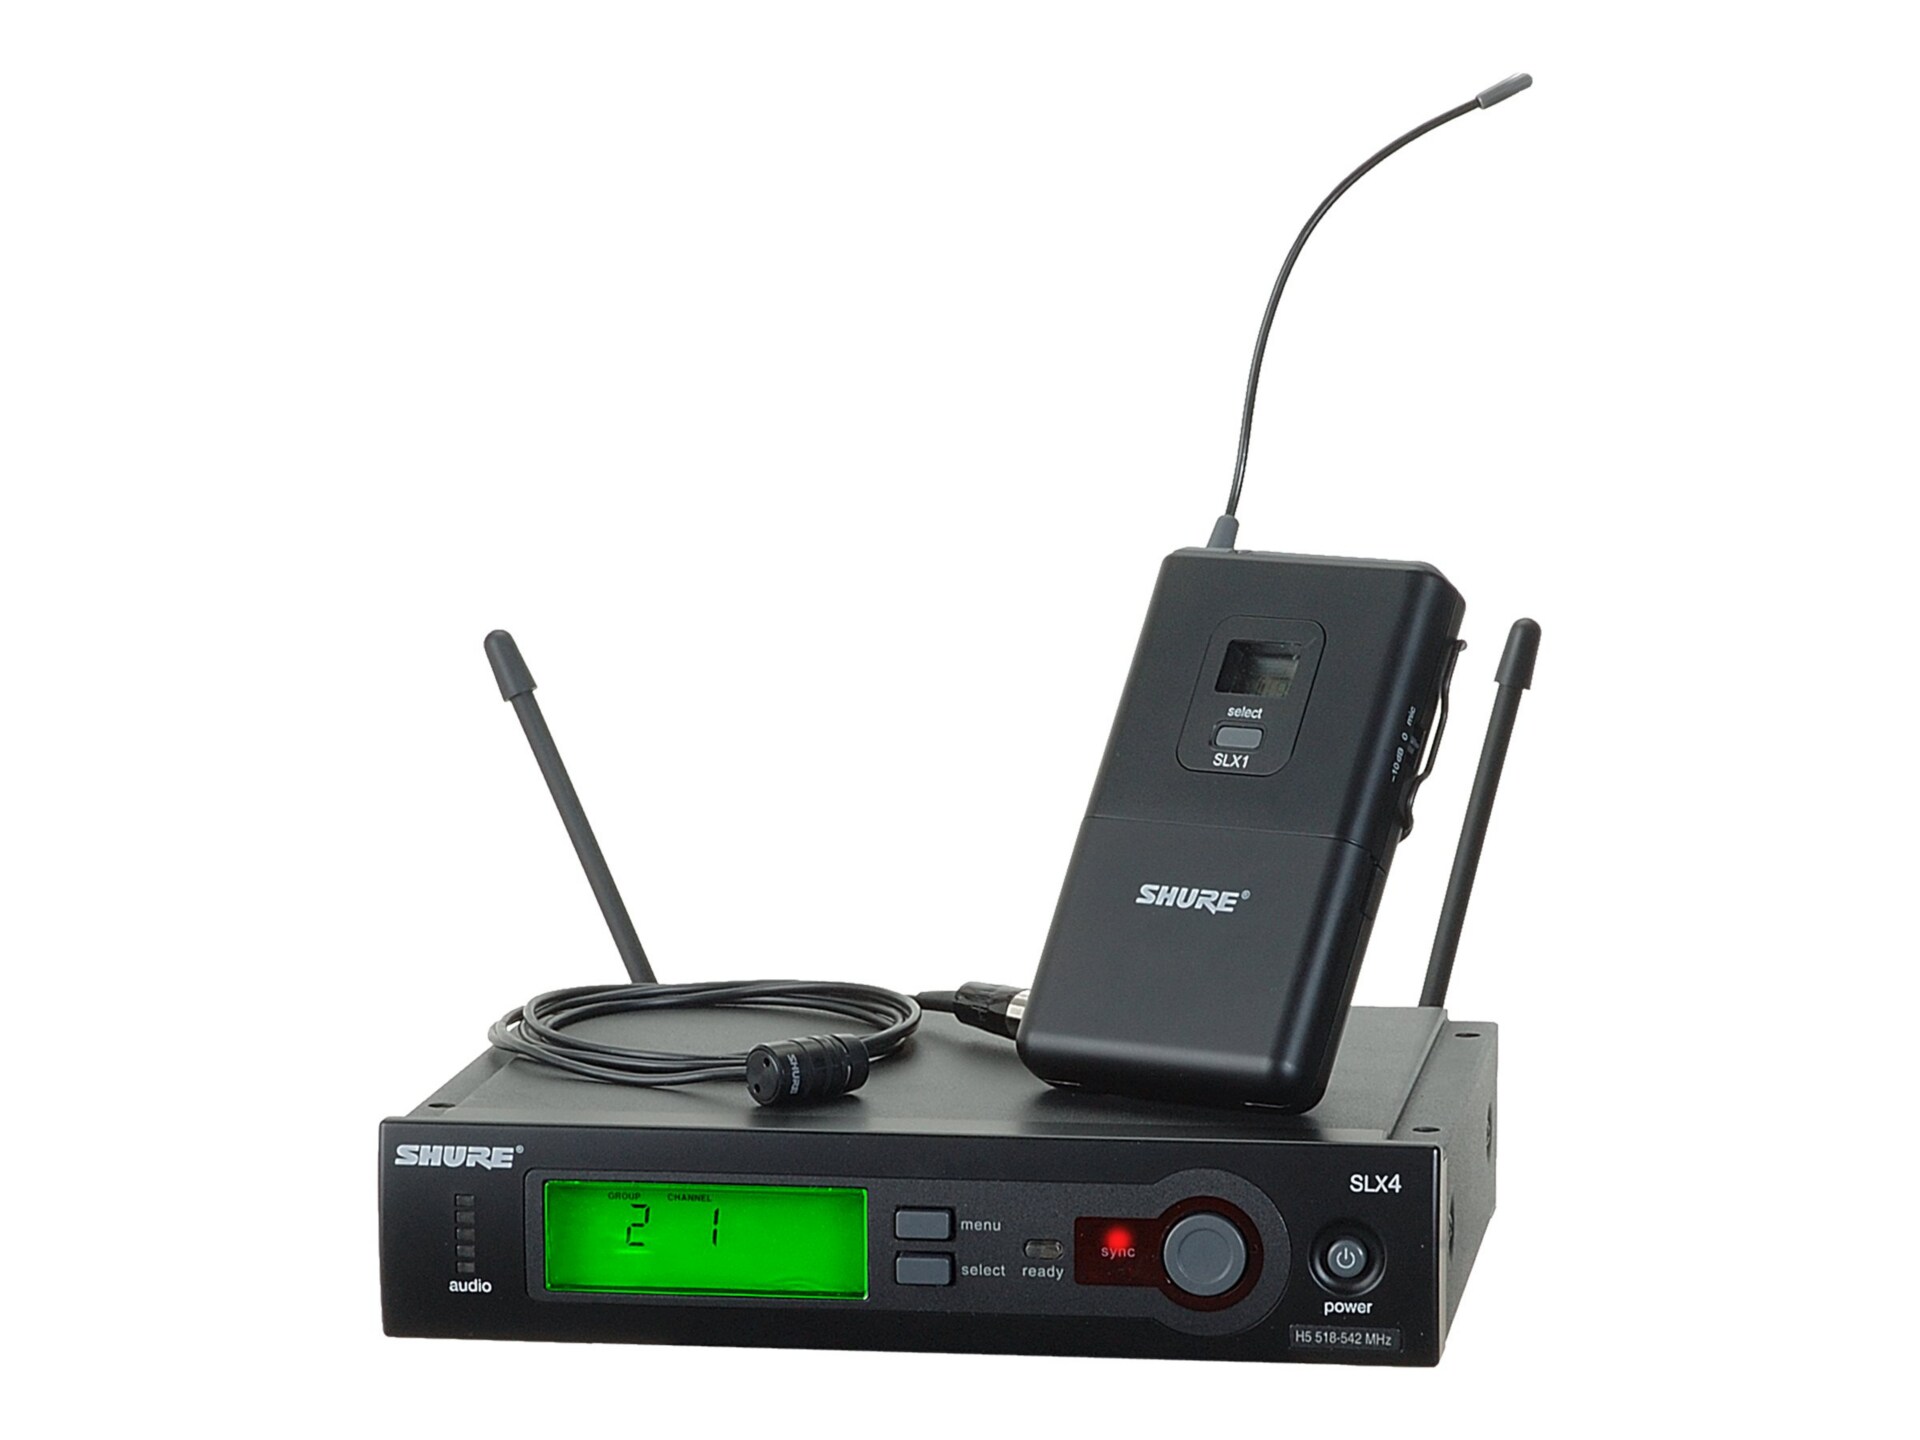 Shure SLX SLX14/85 - wireless microphone system